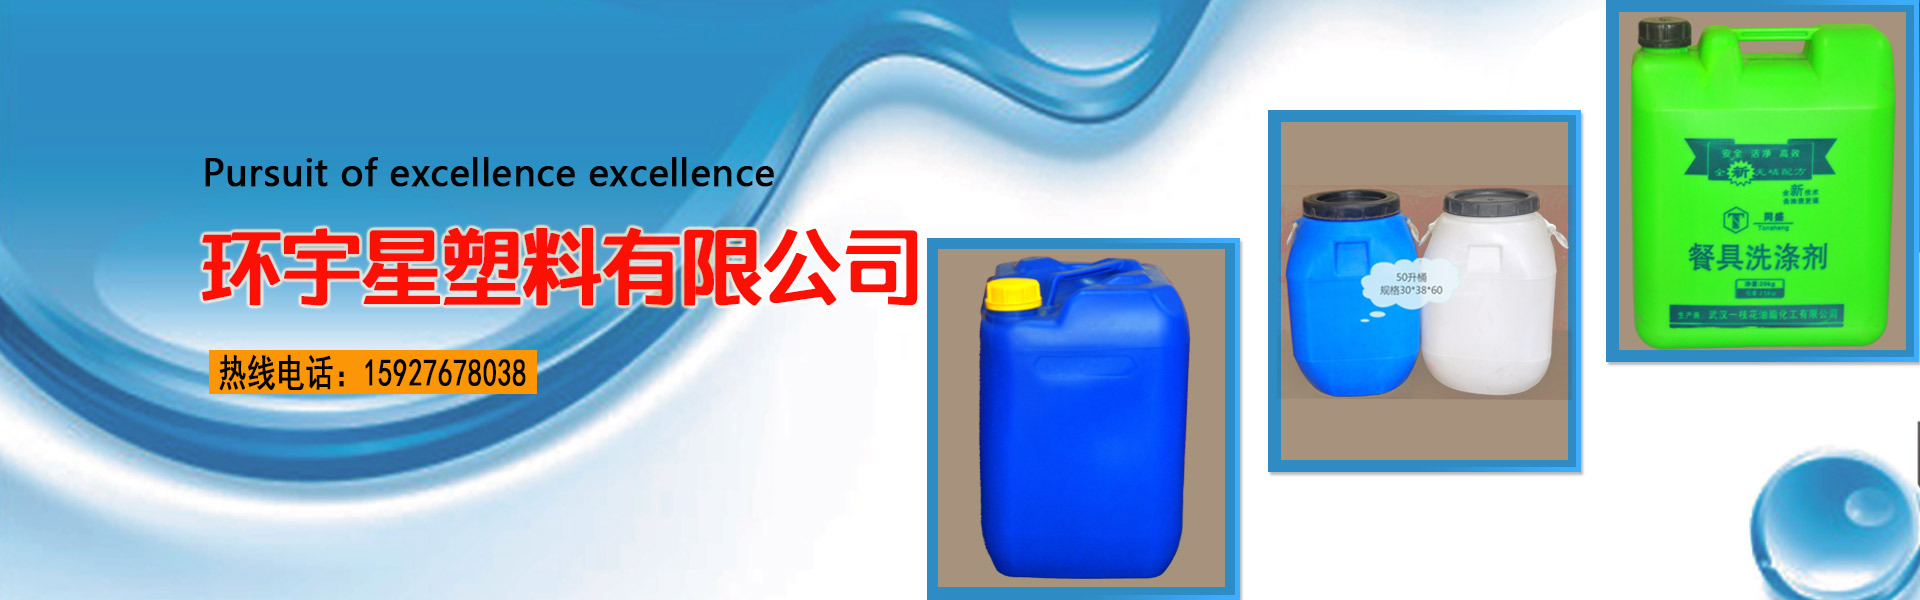 武汉环宇星塑料有限公司网站首页图-武汉塑料桶